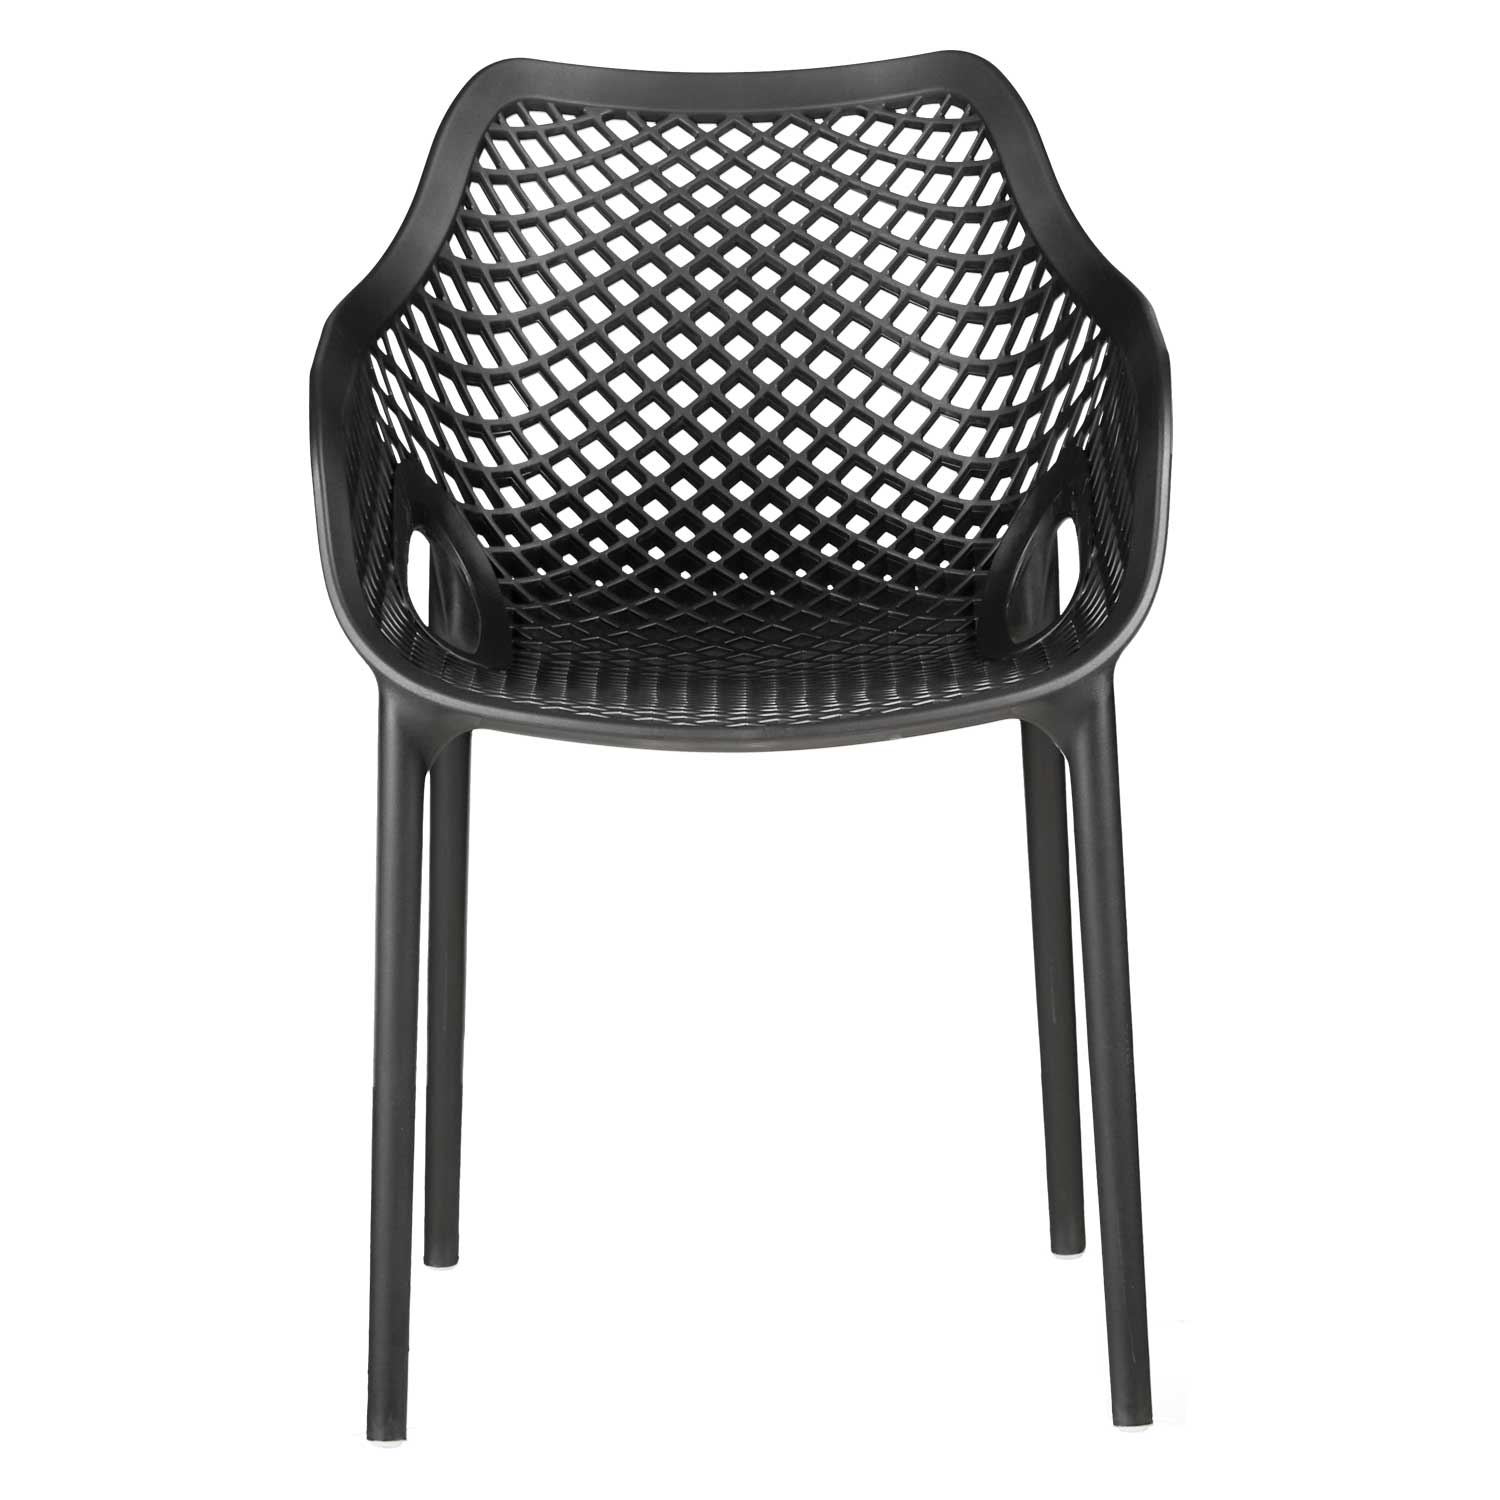 Chaise de jardin avec accoudoirs Noir Lot de 4 Fauteuils de jardin Plastique Chaises exterieur Chaises empilable